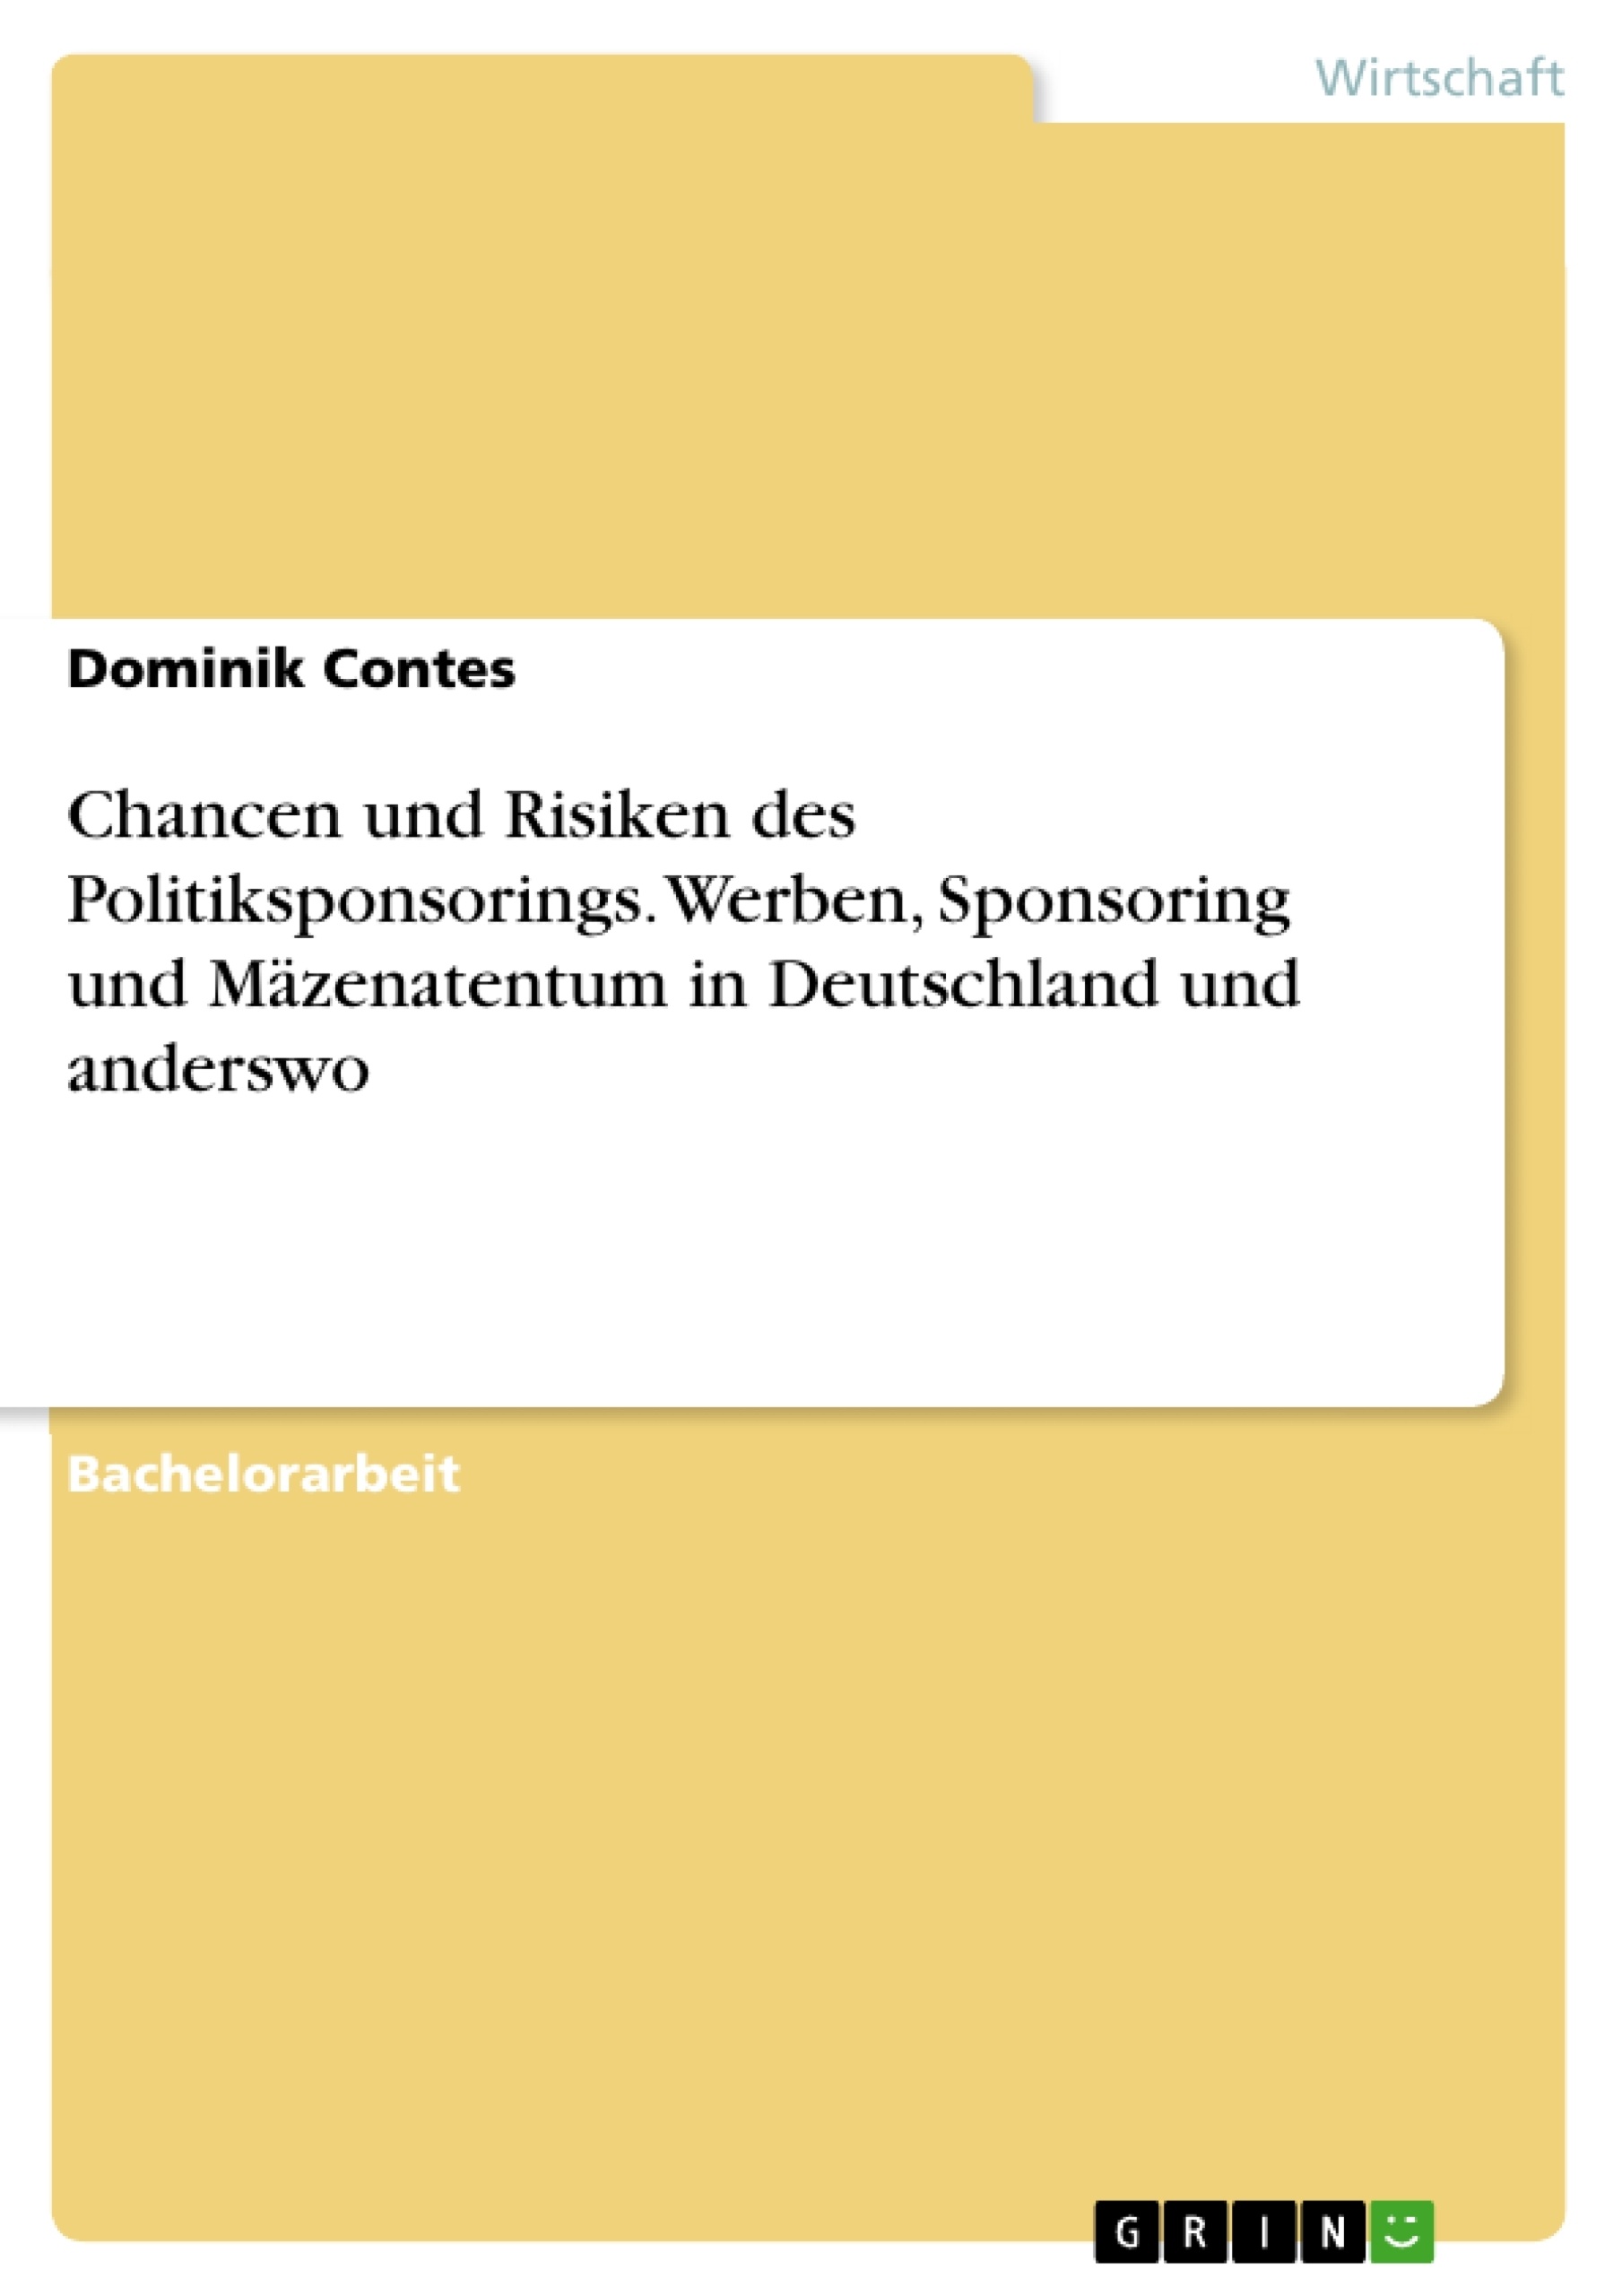 Titel: Chancen und Risiken des Politiksponsorings. Werben, Sponsoring und Mäzenatentum in Deutschland und anderswo